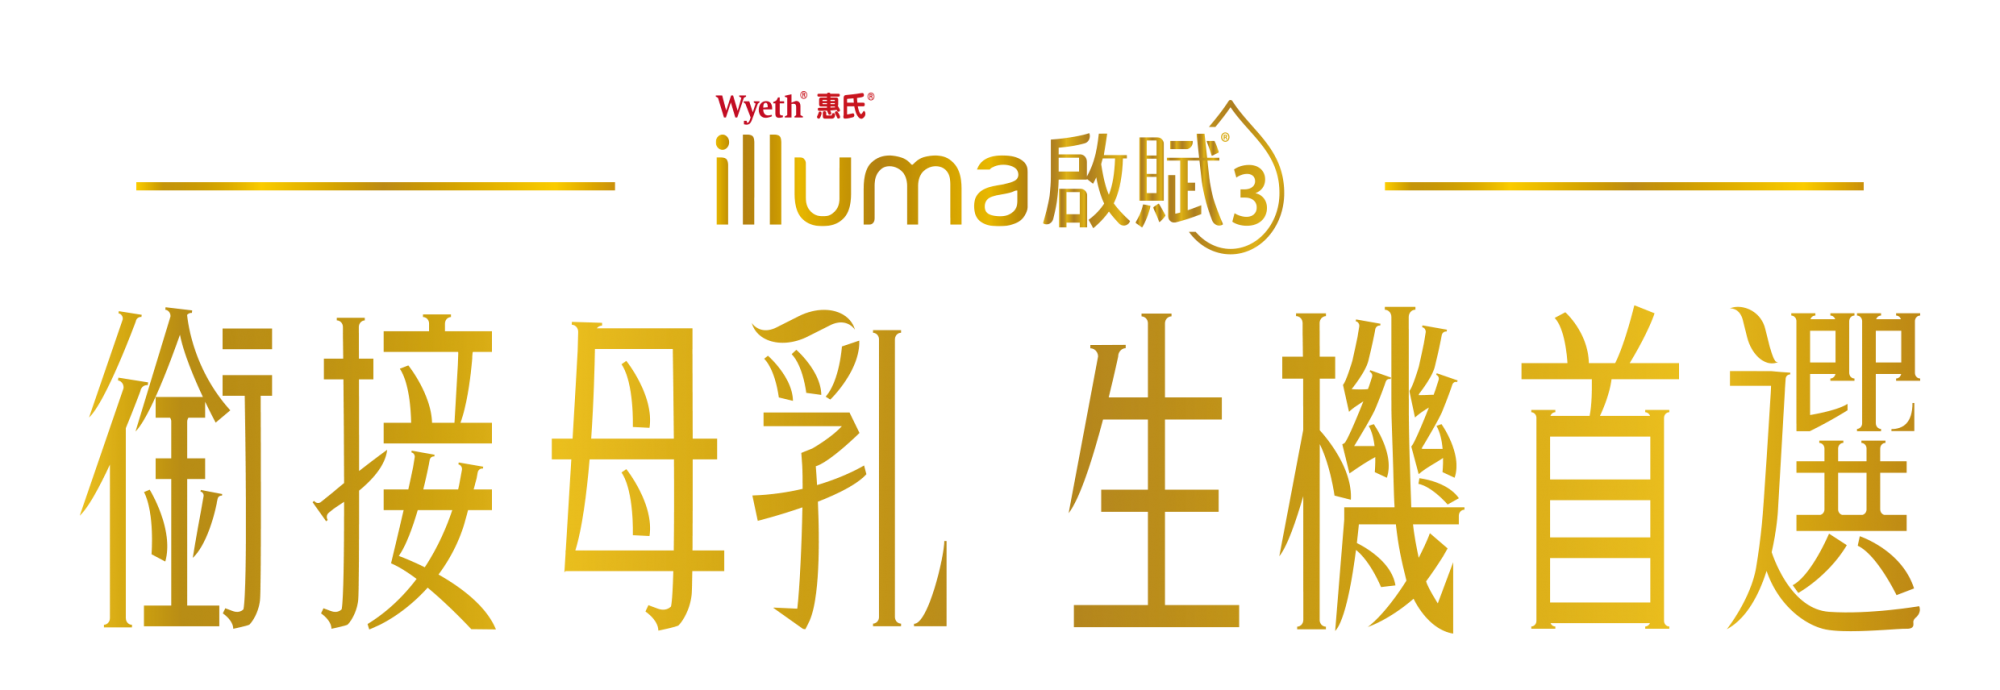 illuma logo.png (266 KB)